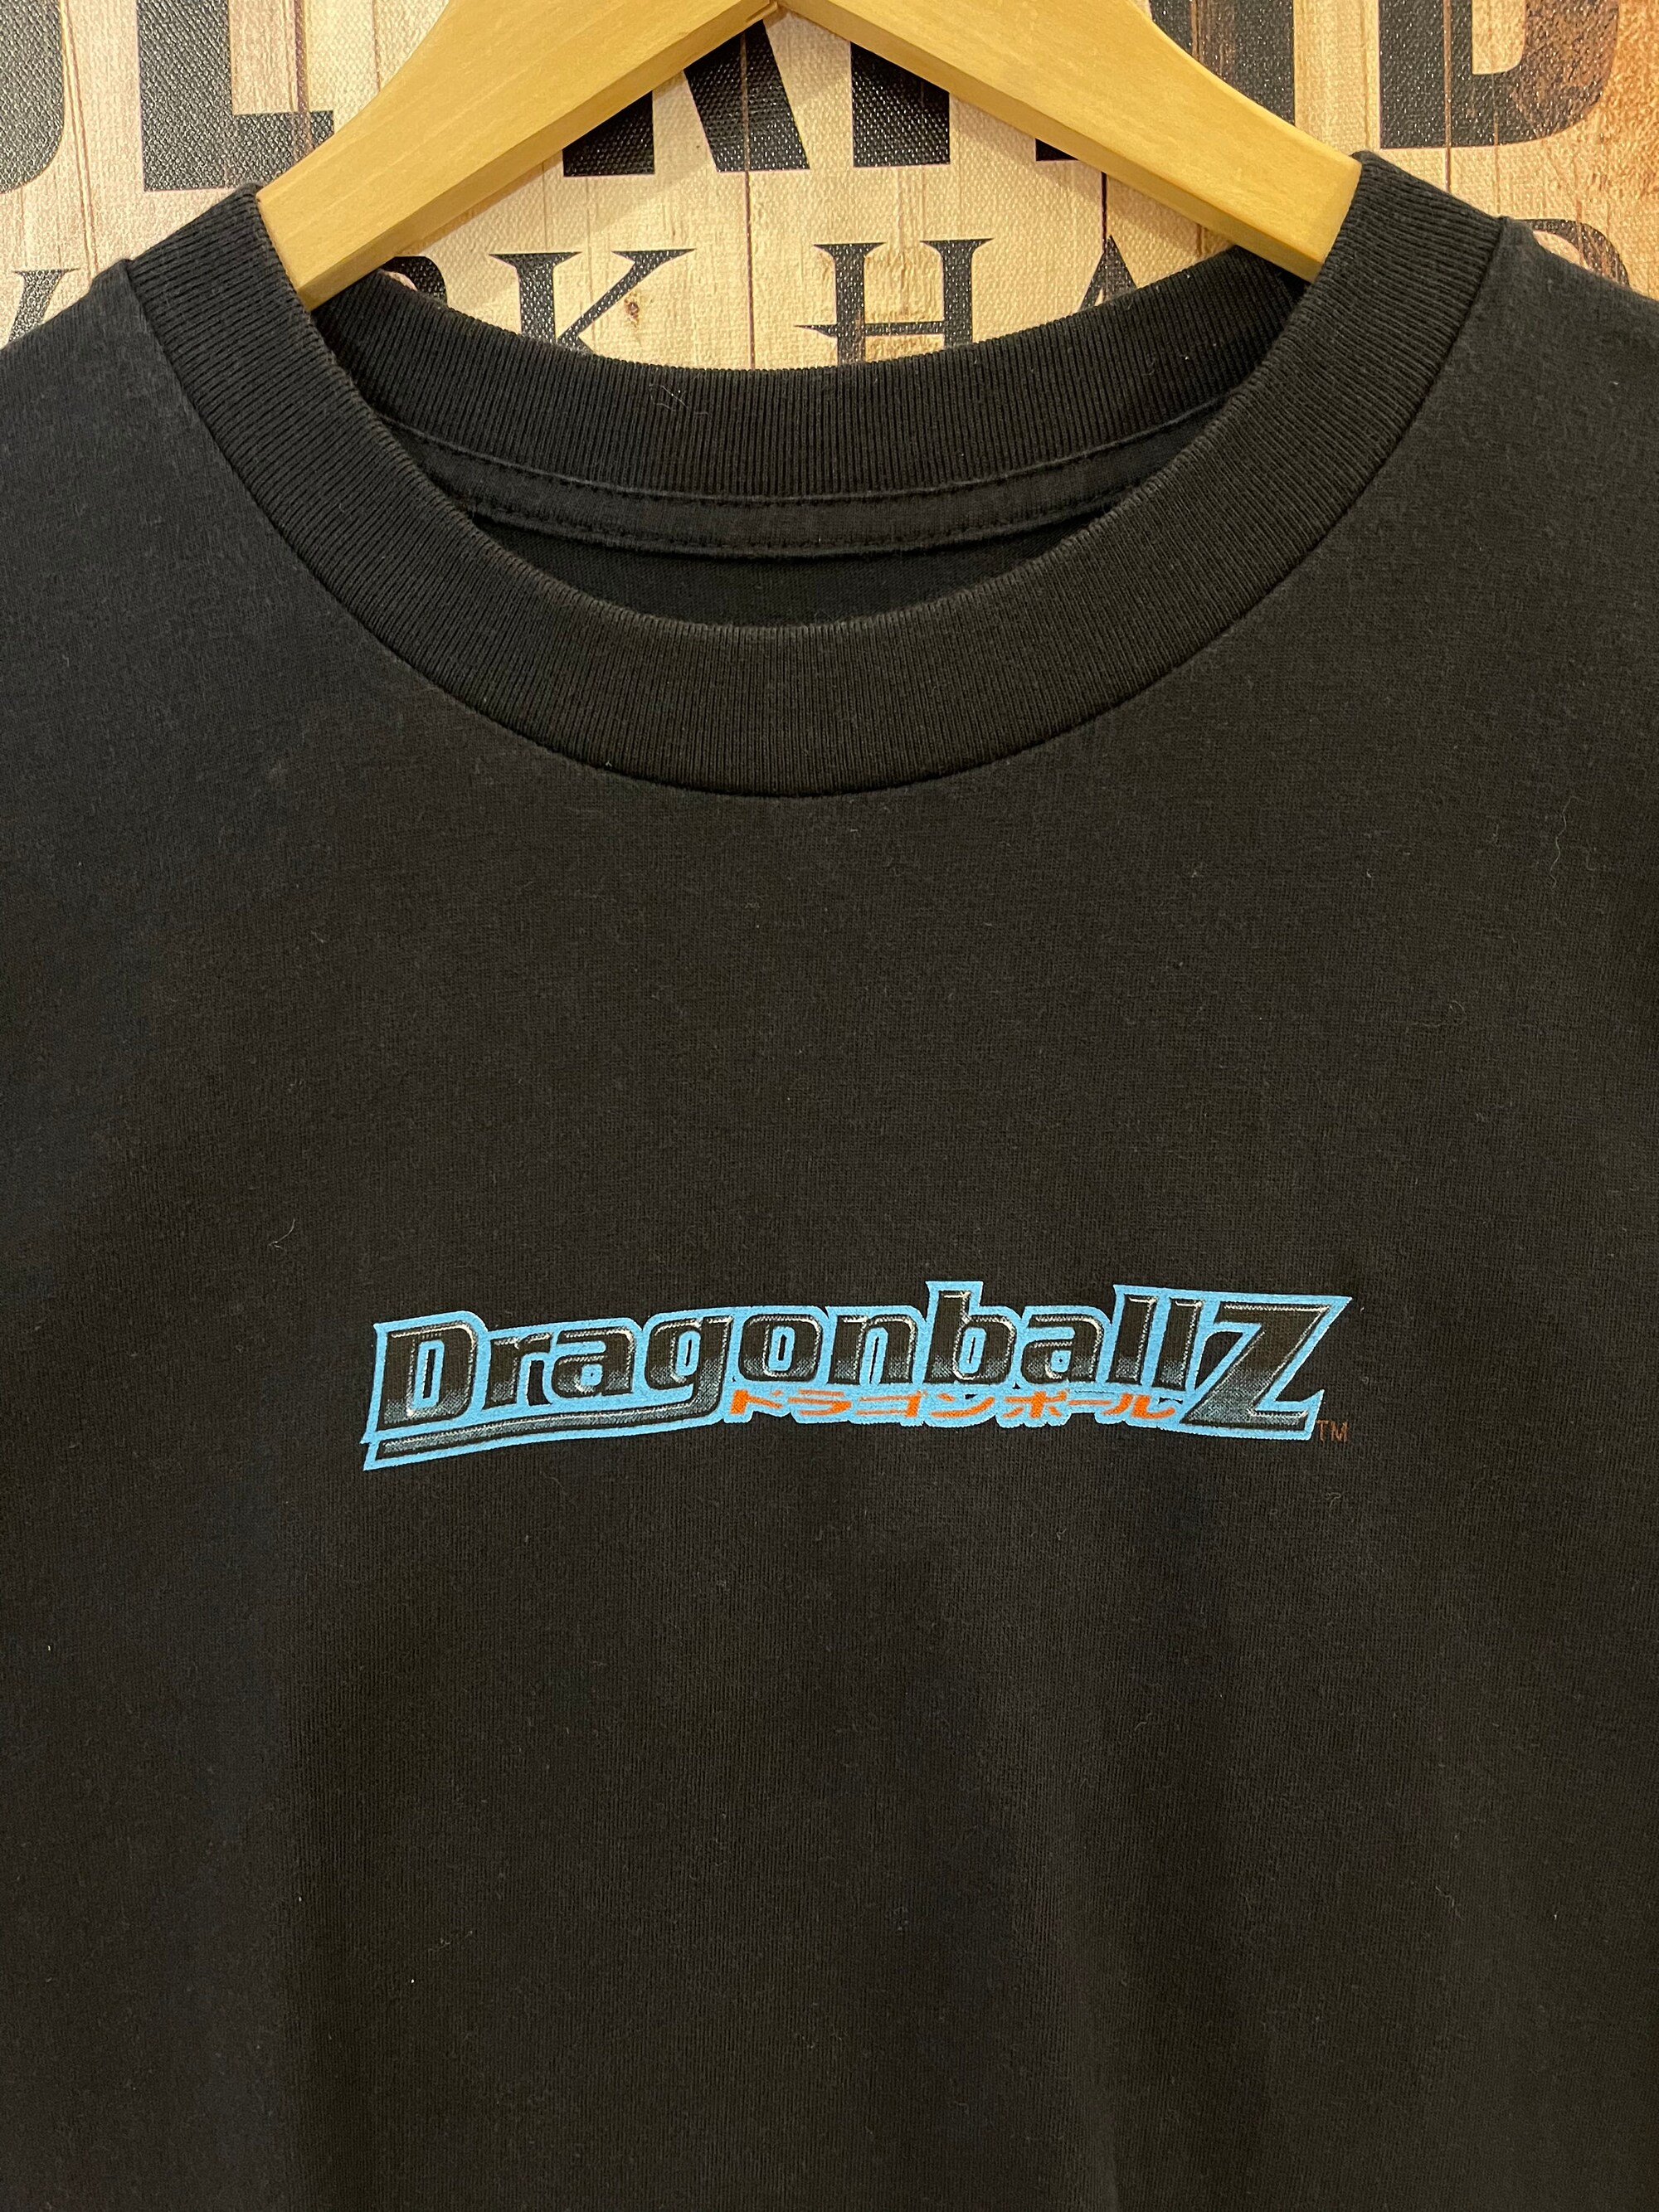 Vintage 1999 Dragon ball Z Goku Tee.